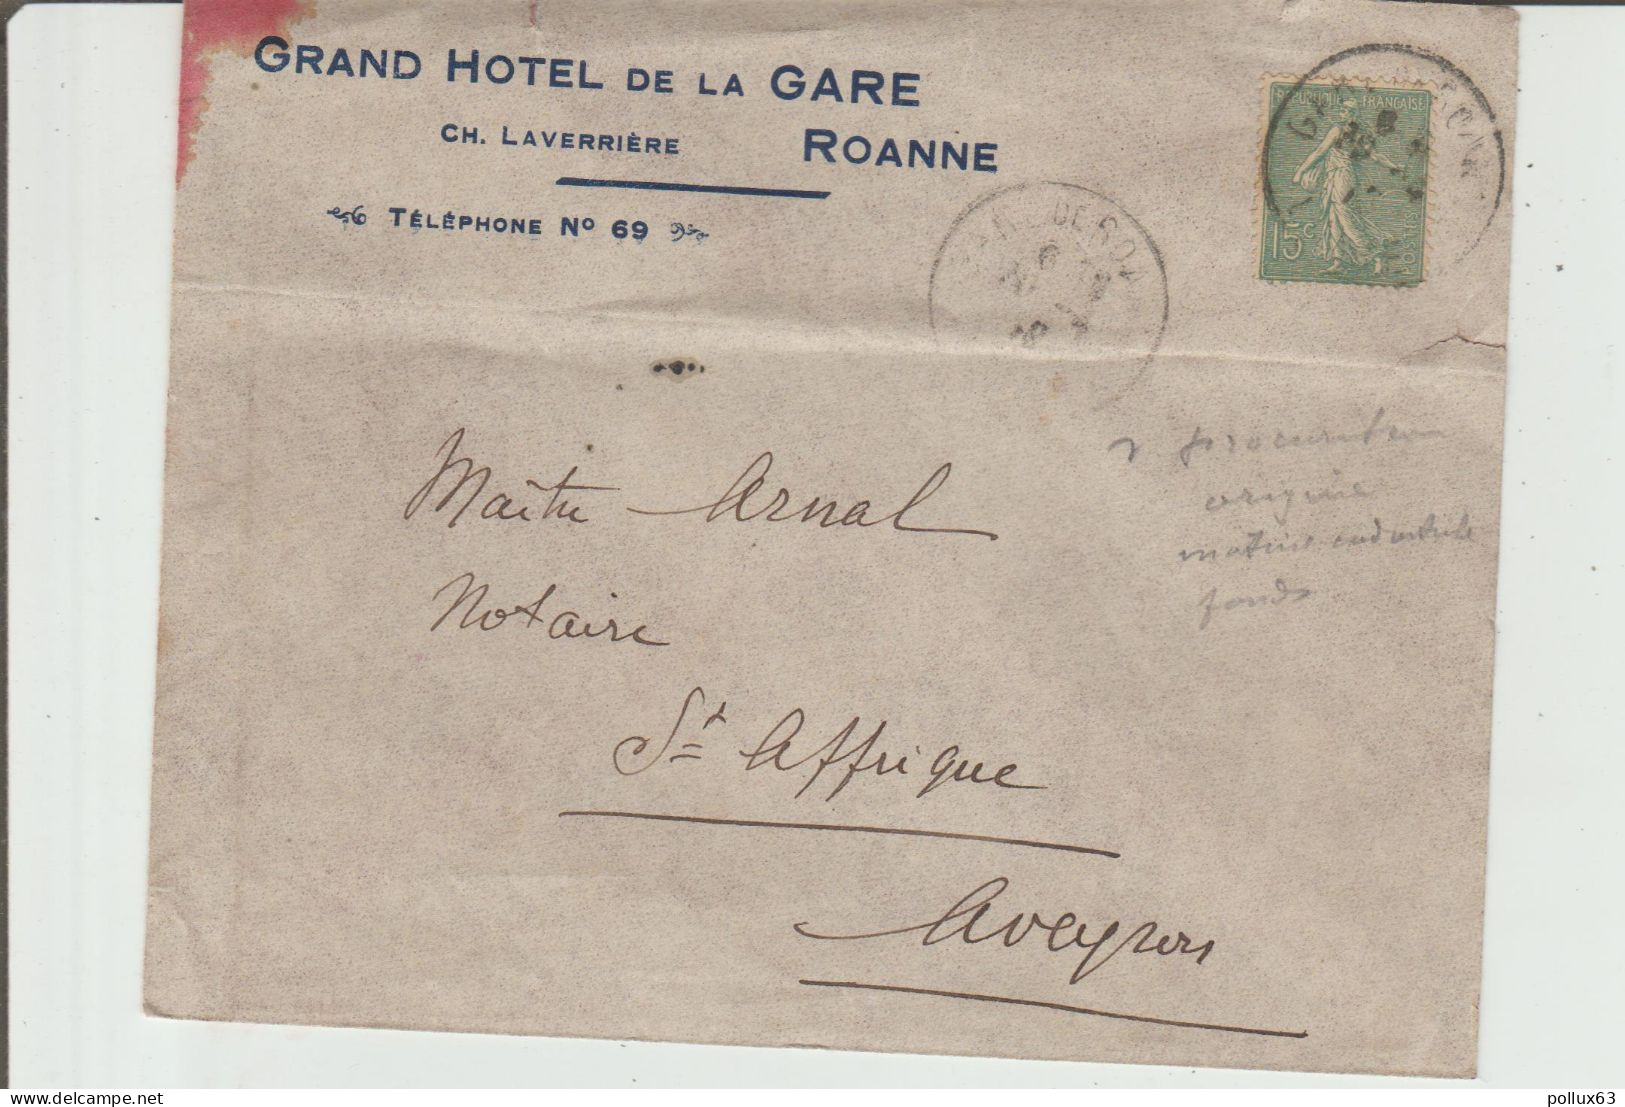 ENVELOPPE DE CH. LAVERRIERE, GRAND HÔTEL DE LA GARE à ROANNE (LOIRE) à MAÎTRE ARNAL NOTAIRE à SAINT-AFFRIQUE (12) - 1900 – 1949